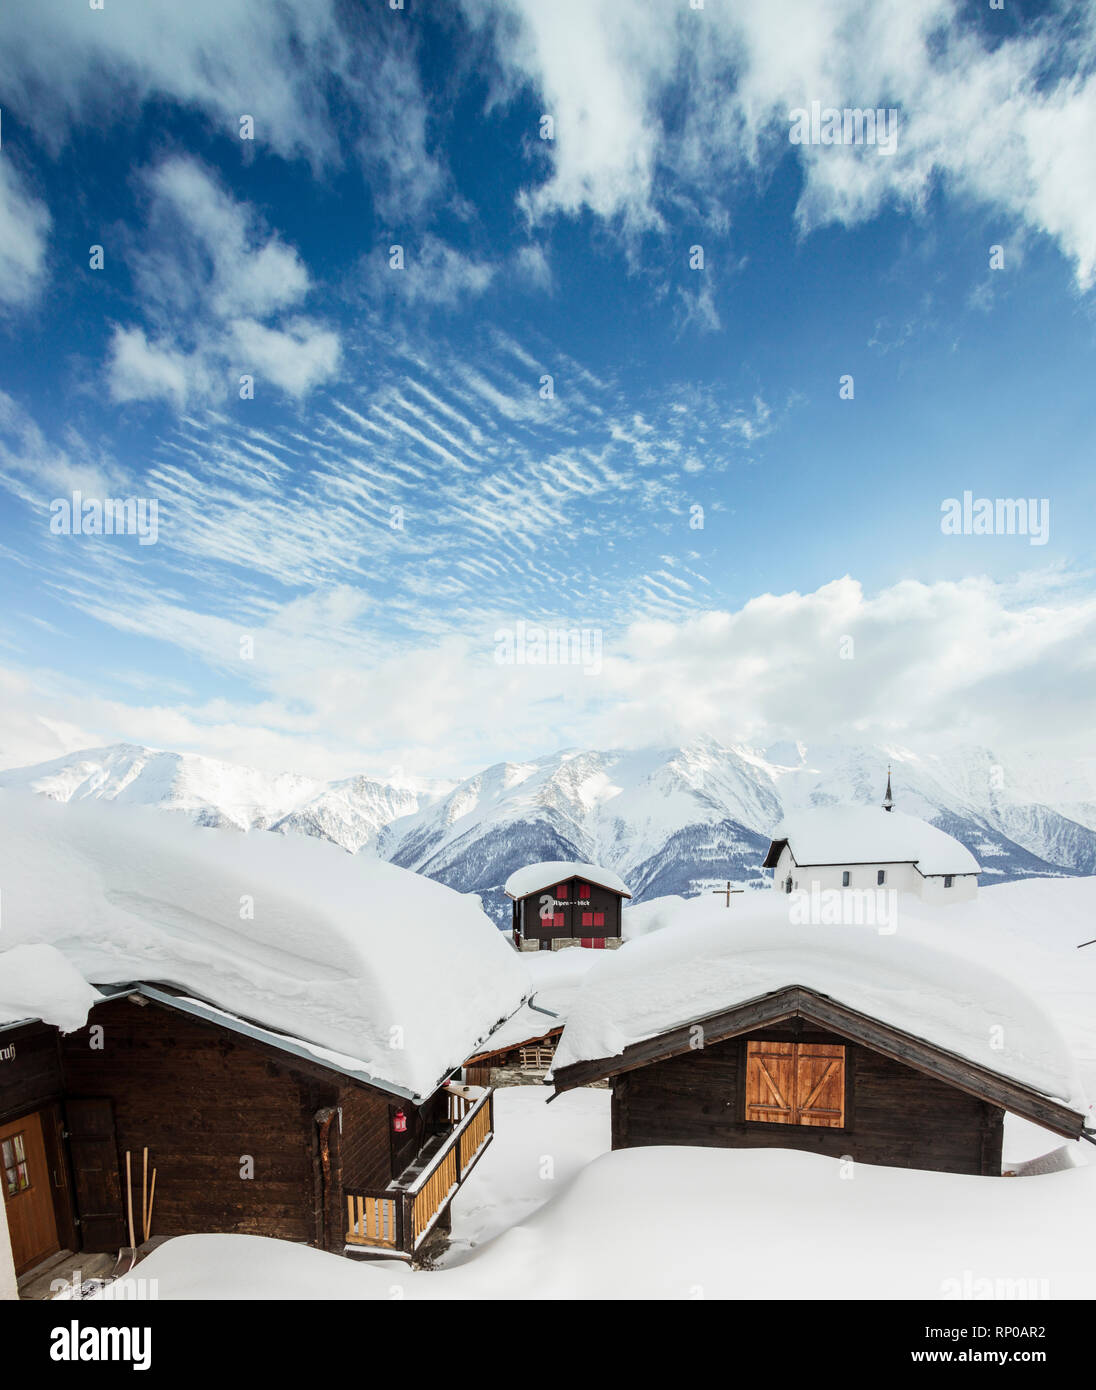 Vue panoramique de l'église et des refuges de montagne couverte de neige fraîche Bettmeralp Française, canton du Valais Suisse Europe Banque D'Images